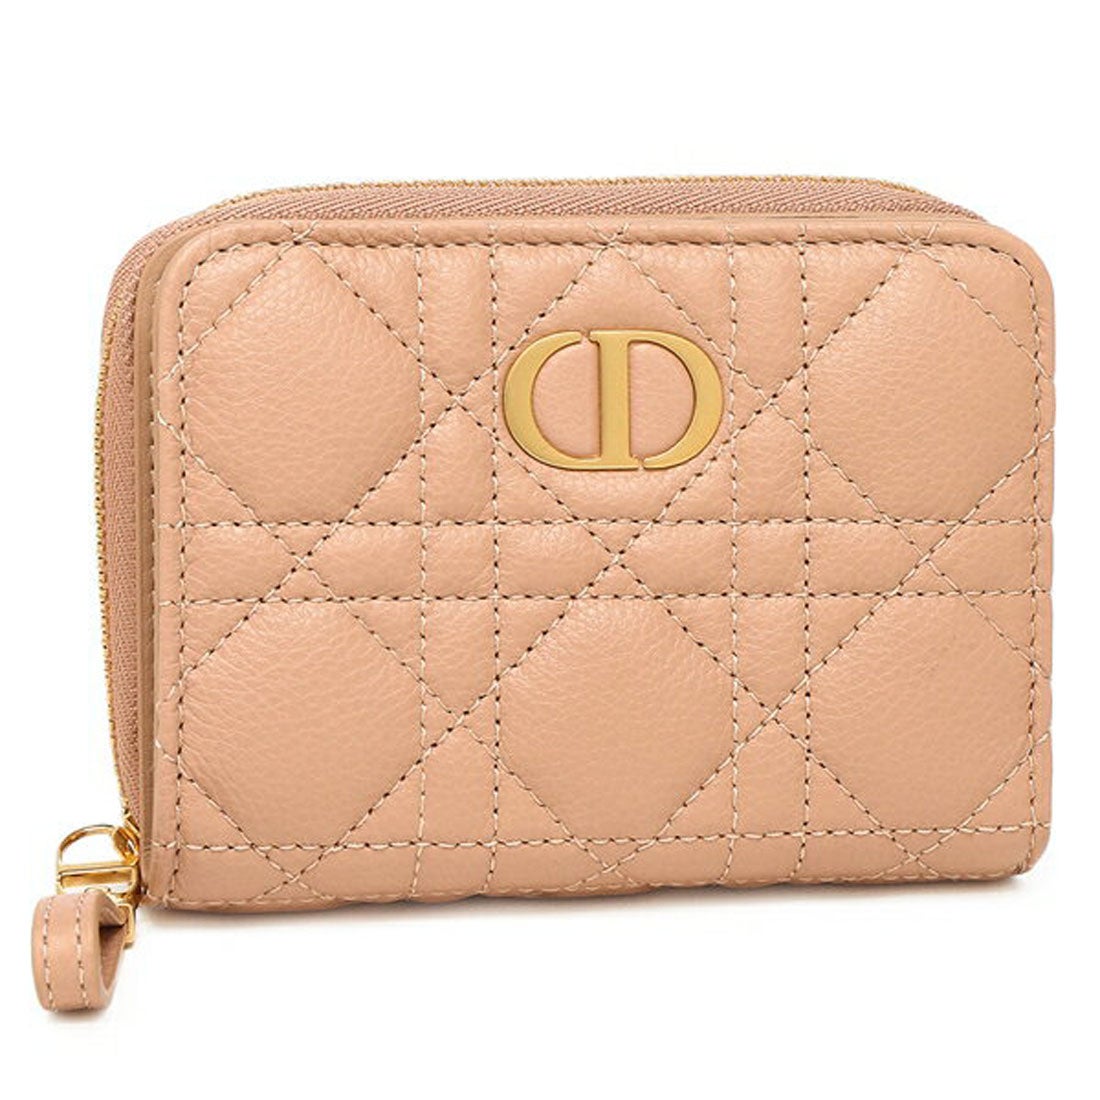 クリスチャン ディオール Christian Dior 二つ折り財布 カナージュ 